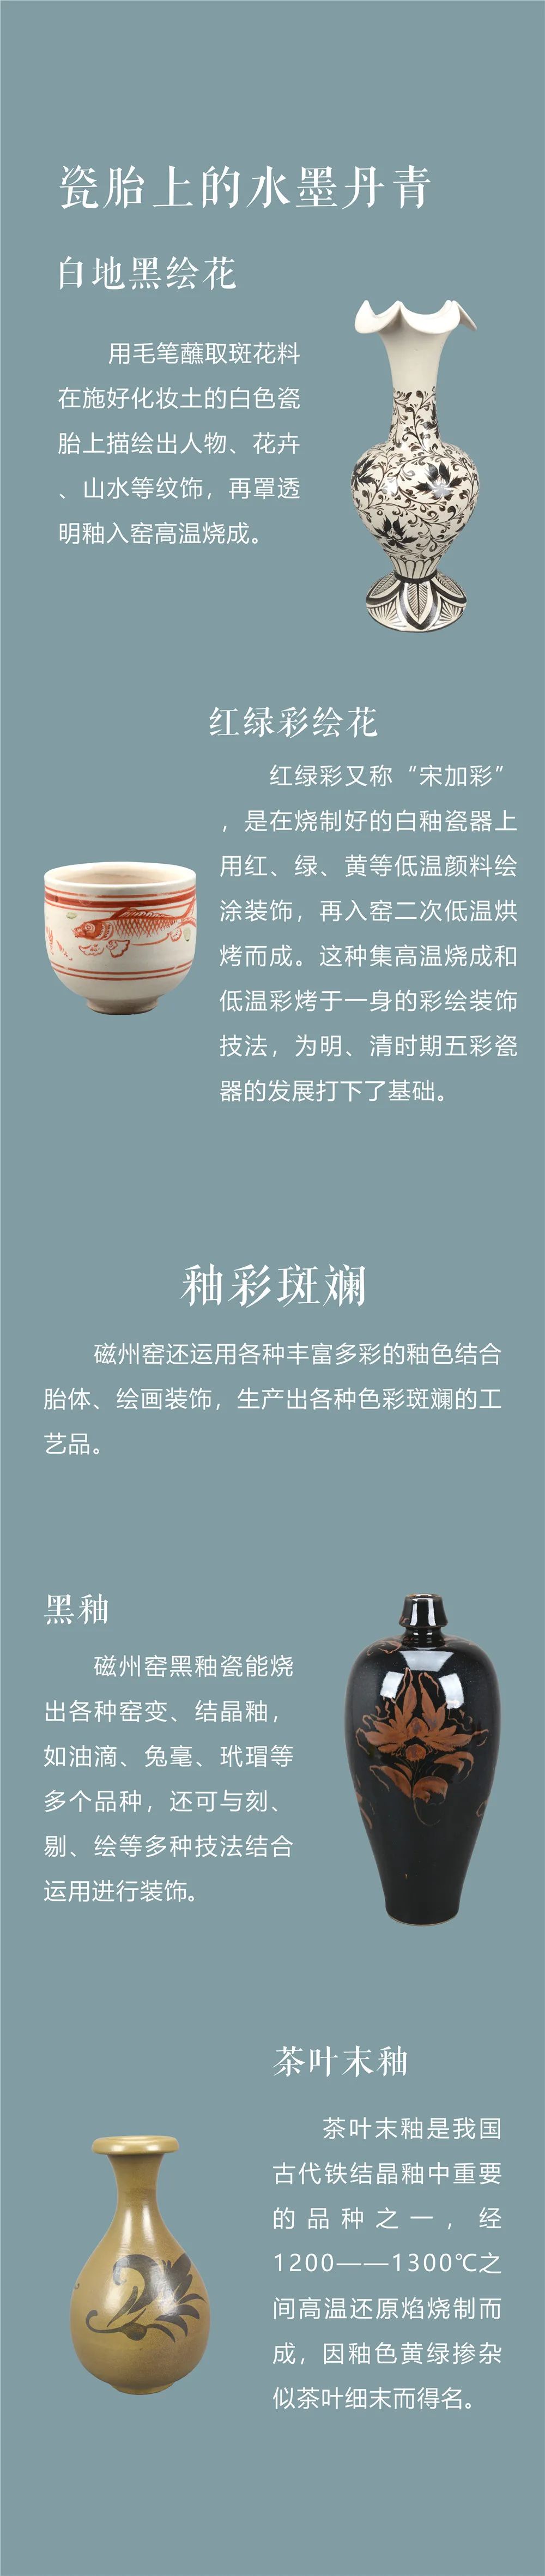 线上展览：《千年窑火生生不息——邯郸市博物馆馆藏磁州窑瓷器展》第二期